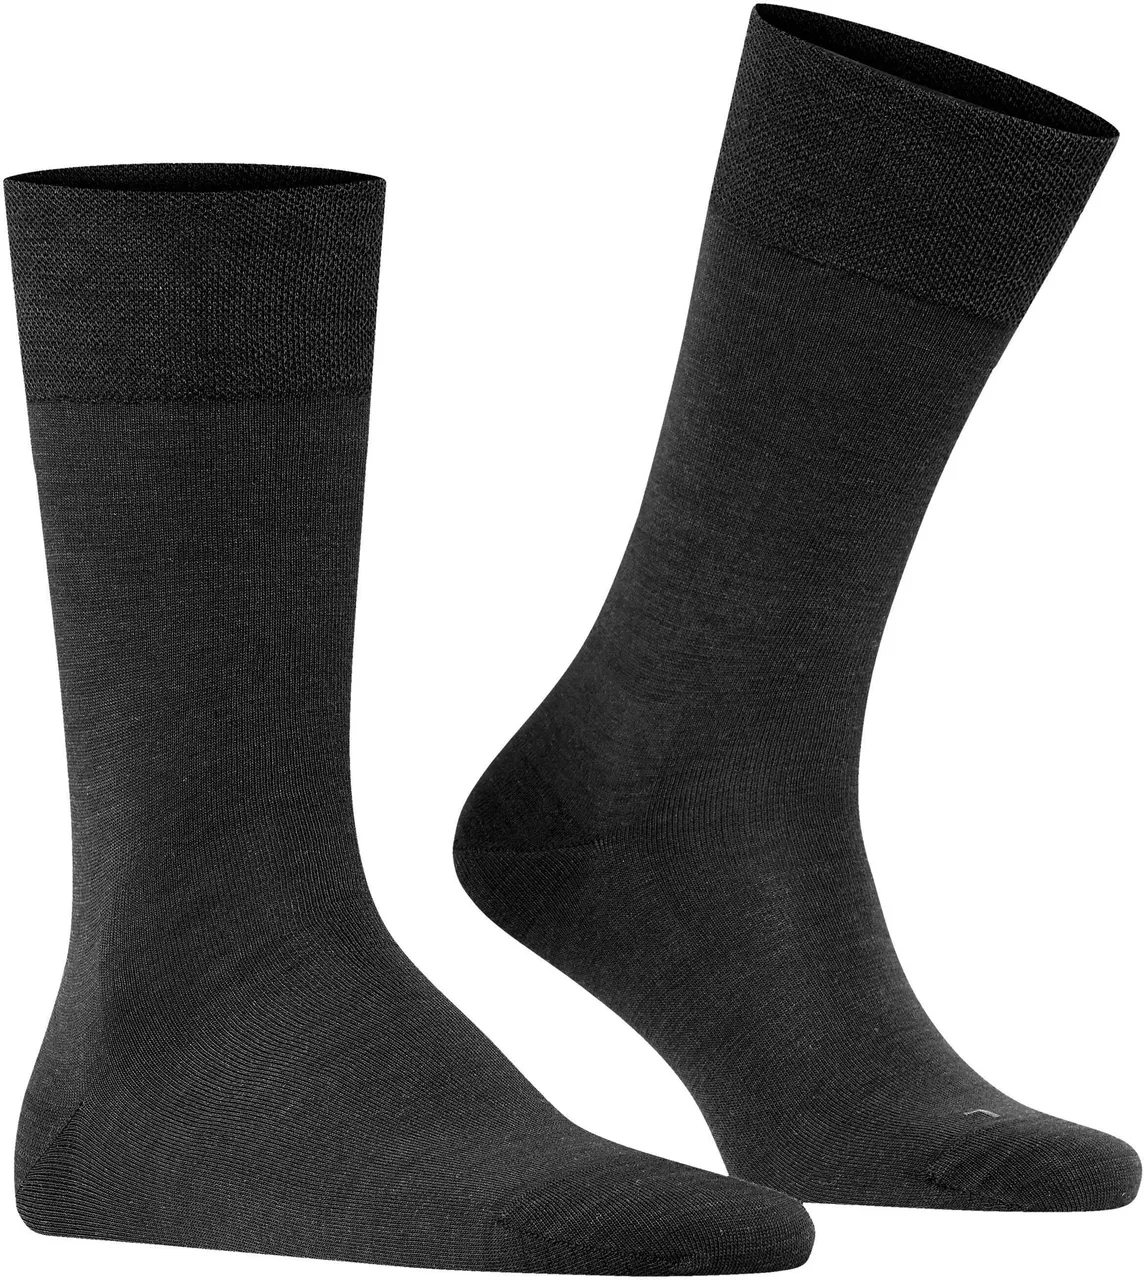 Falke Sock Sensitive Berlin Wool Blend Black